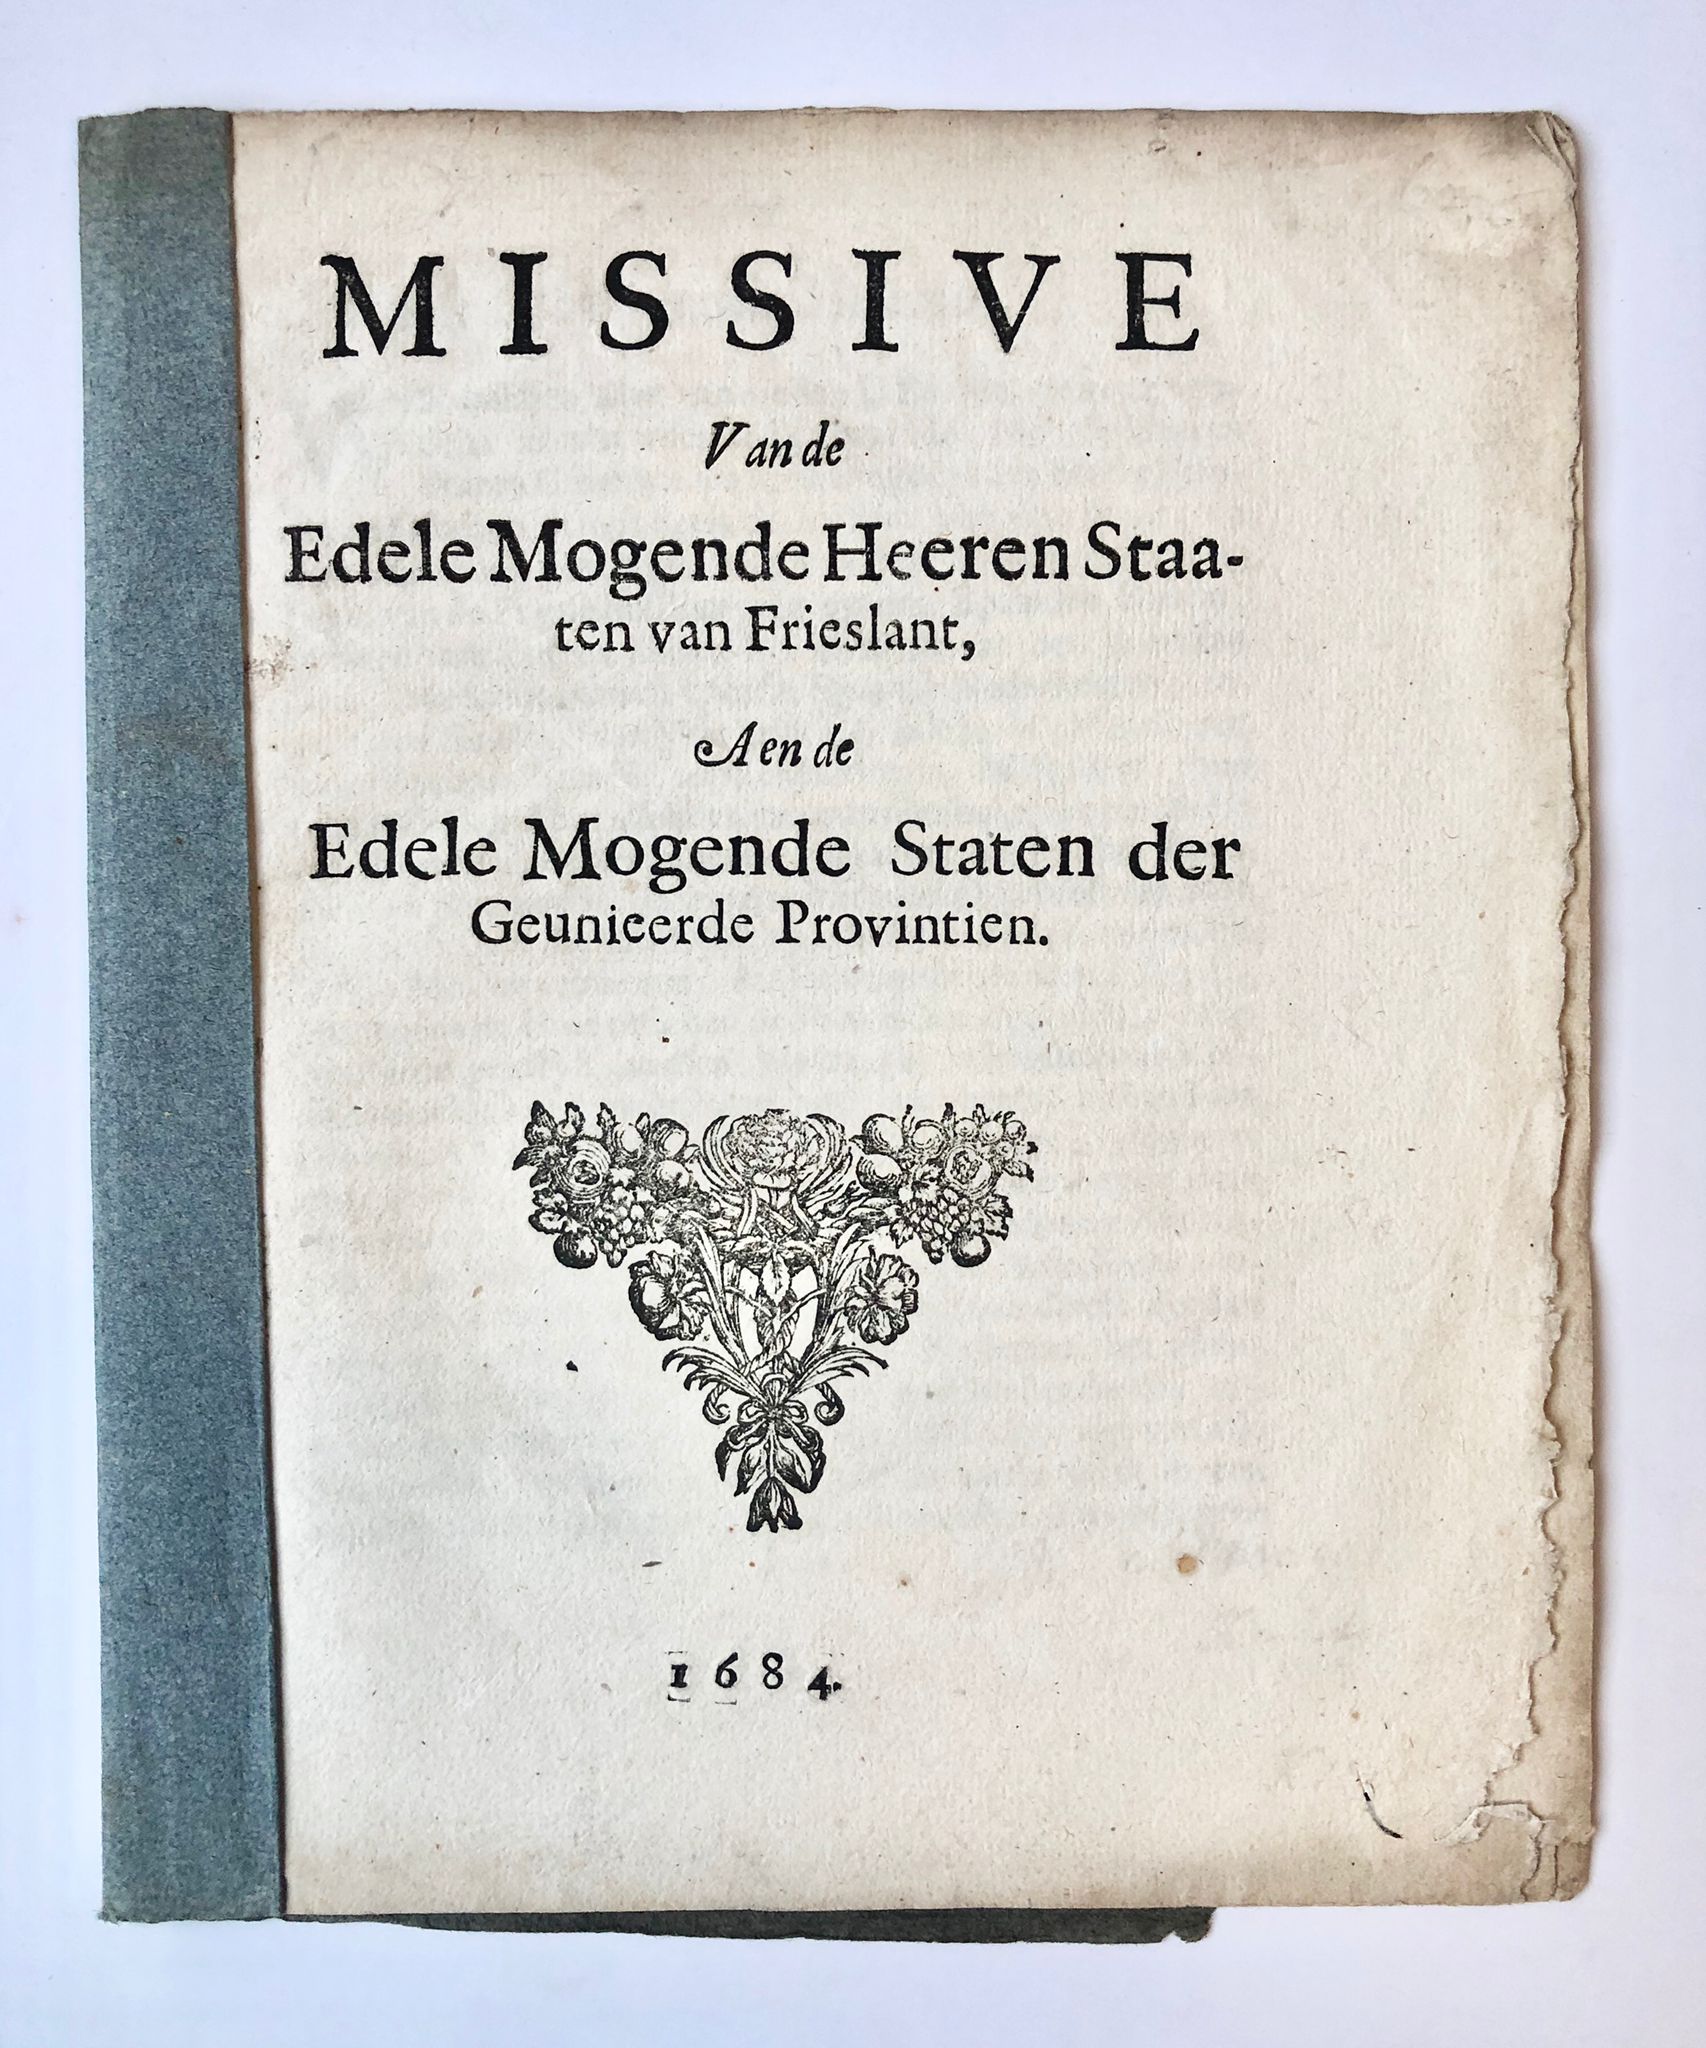 [Friesland] Missive van de Edele Mogende Heeren Staaten van Frieslant, aen de Edele Mogende Staten der Geunieerde Provintien, 1684, 6 pp.